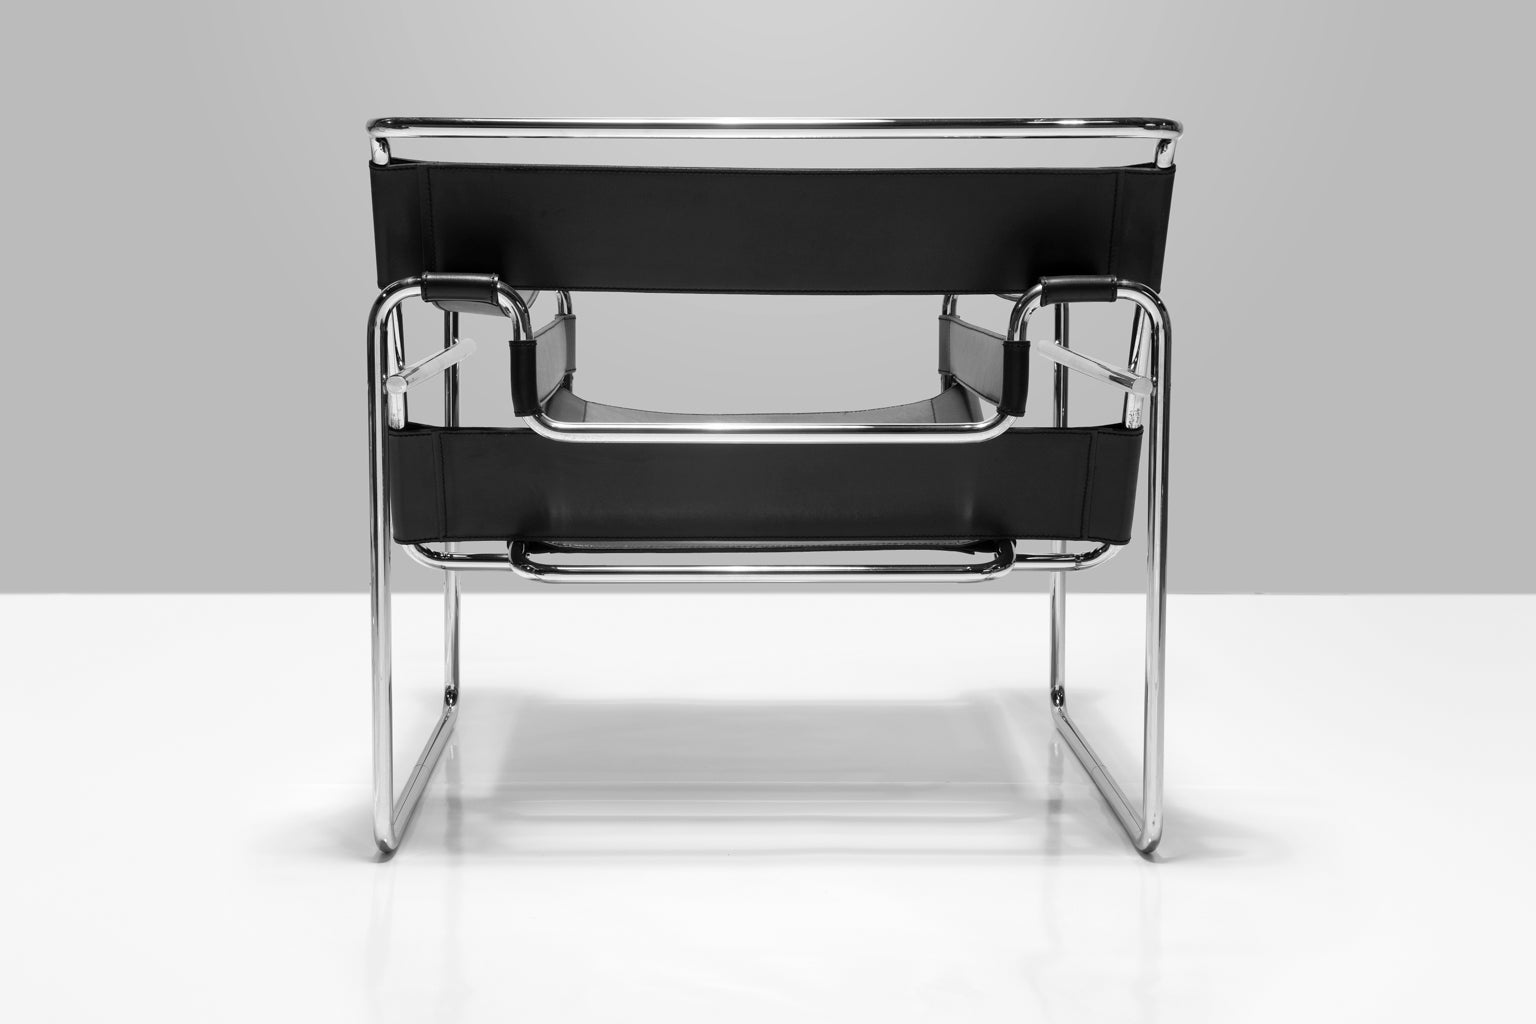 Fauteuil club Wassily de Marcel Breuer conçu en 1925 - 26 pour Knoll, également connu sous le nom de fauteuil modèle B3. Breuer a conçu cette chaise alors qu'il dirigeait l'atelier d'ébénisterie du Bauhaus, à Dessau, en Allemagne. Ces chaises sont